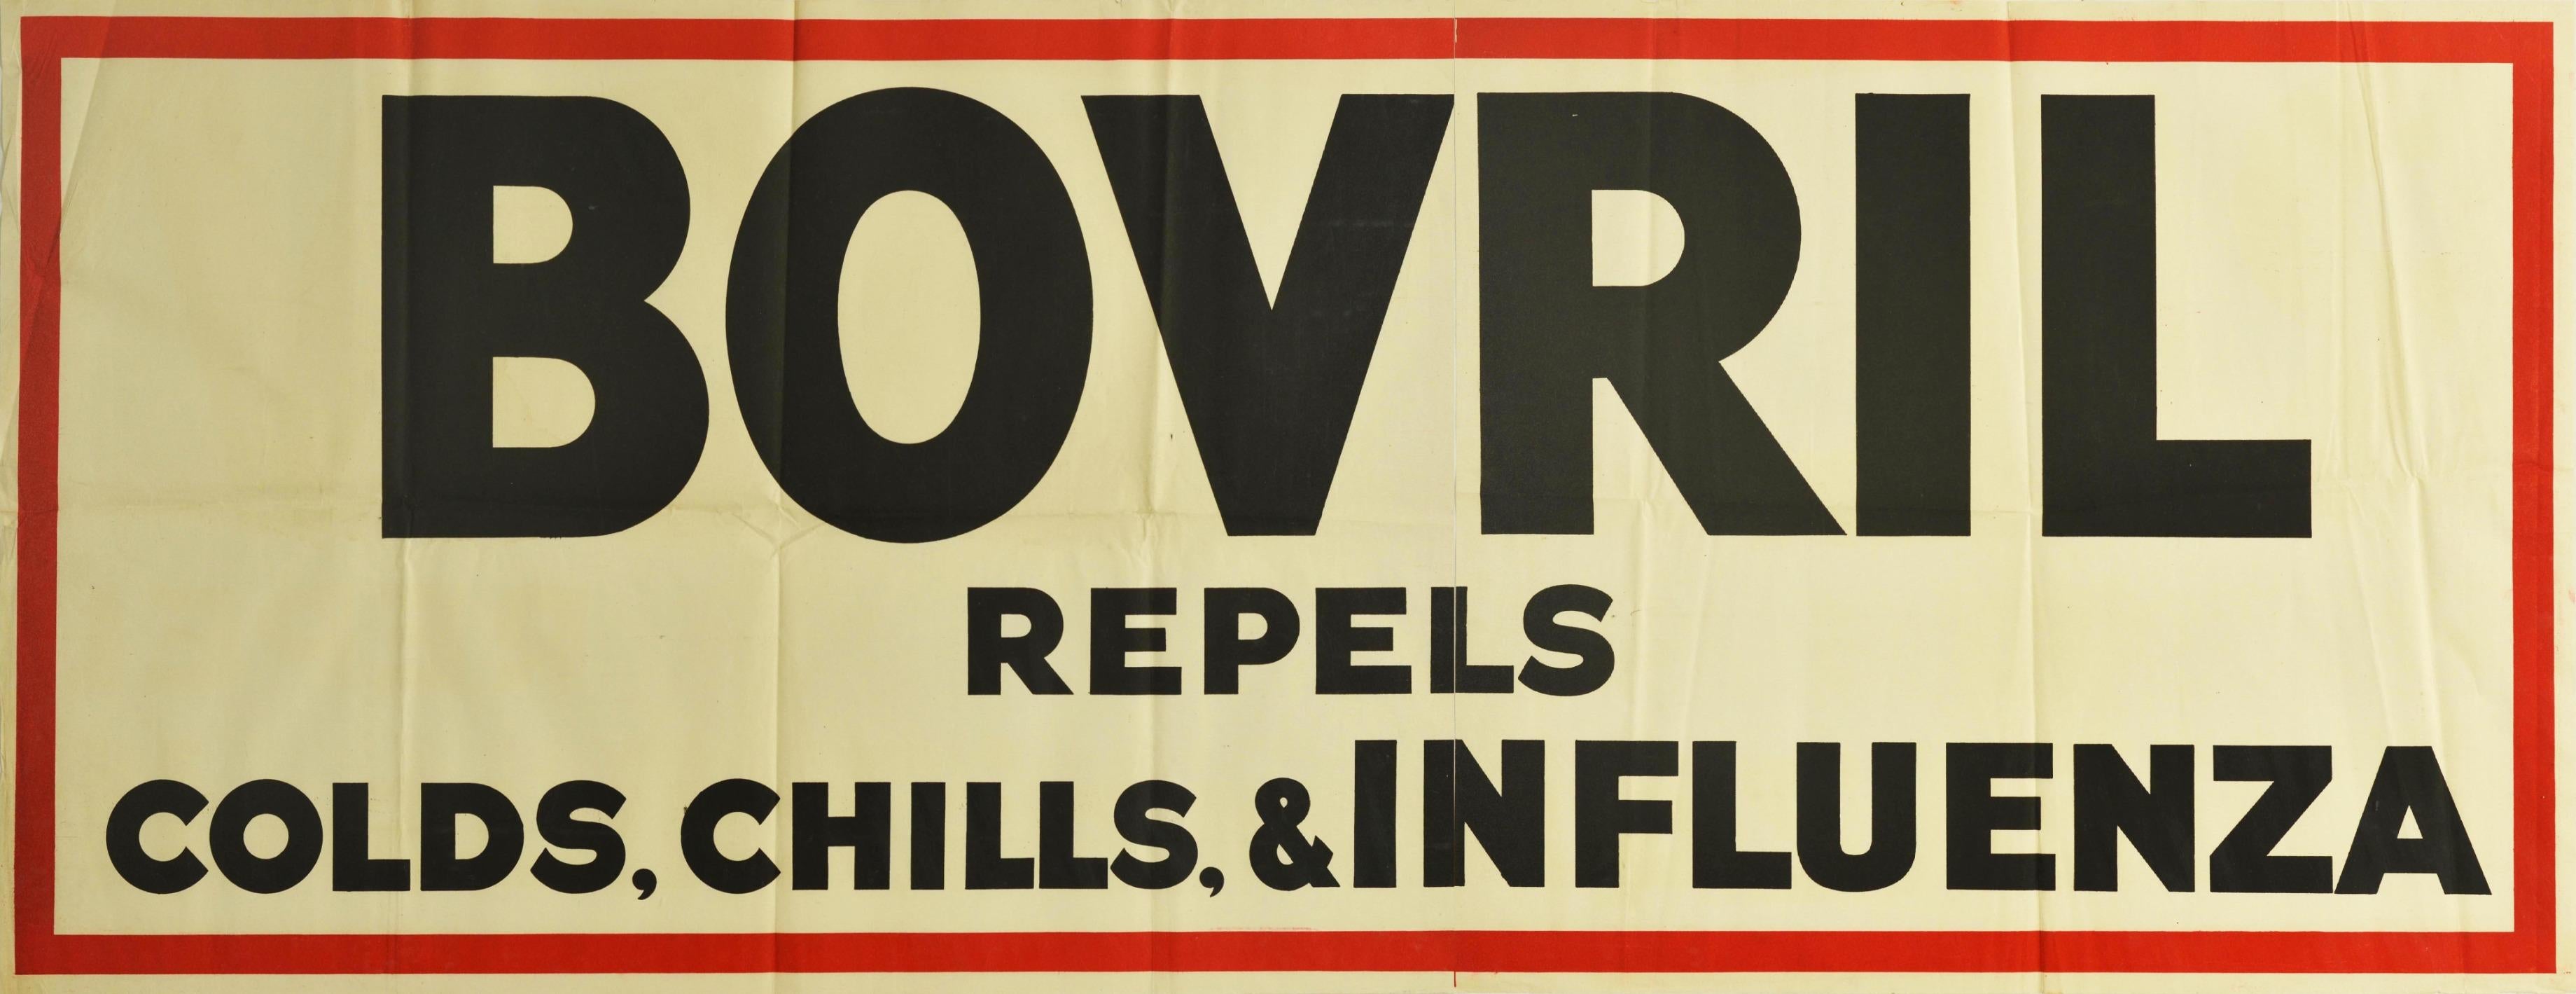 Originales Werbeplakat für Bovril - Bovril vertreibt Erkältungen, Schüttelfrost und Grippe - mit fetten schwarzen Buchstaben auf weißem Hintergrund in einem dicken roten Rahmen. Diese Kampagne wurde in den 1930er Jahren in Großbritannien gedruckt